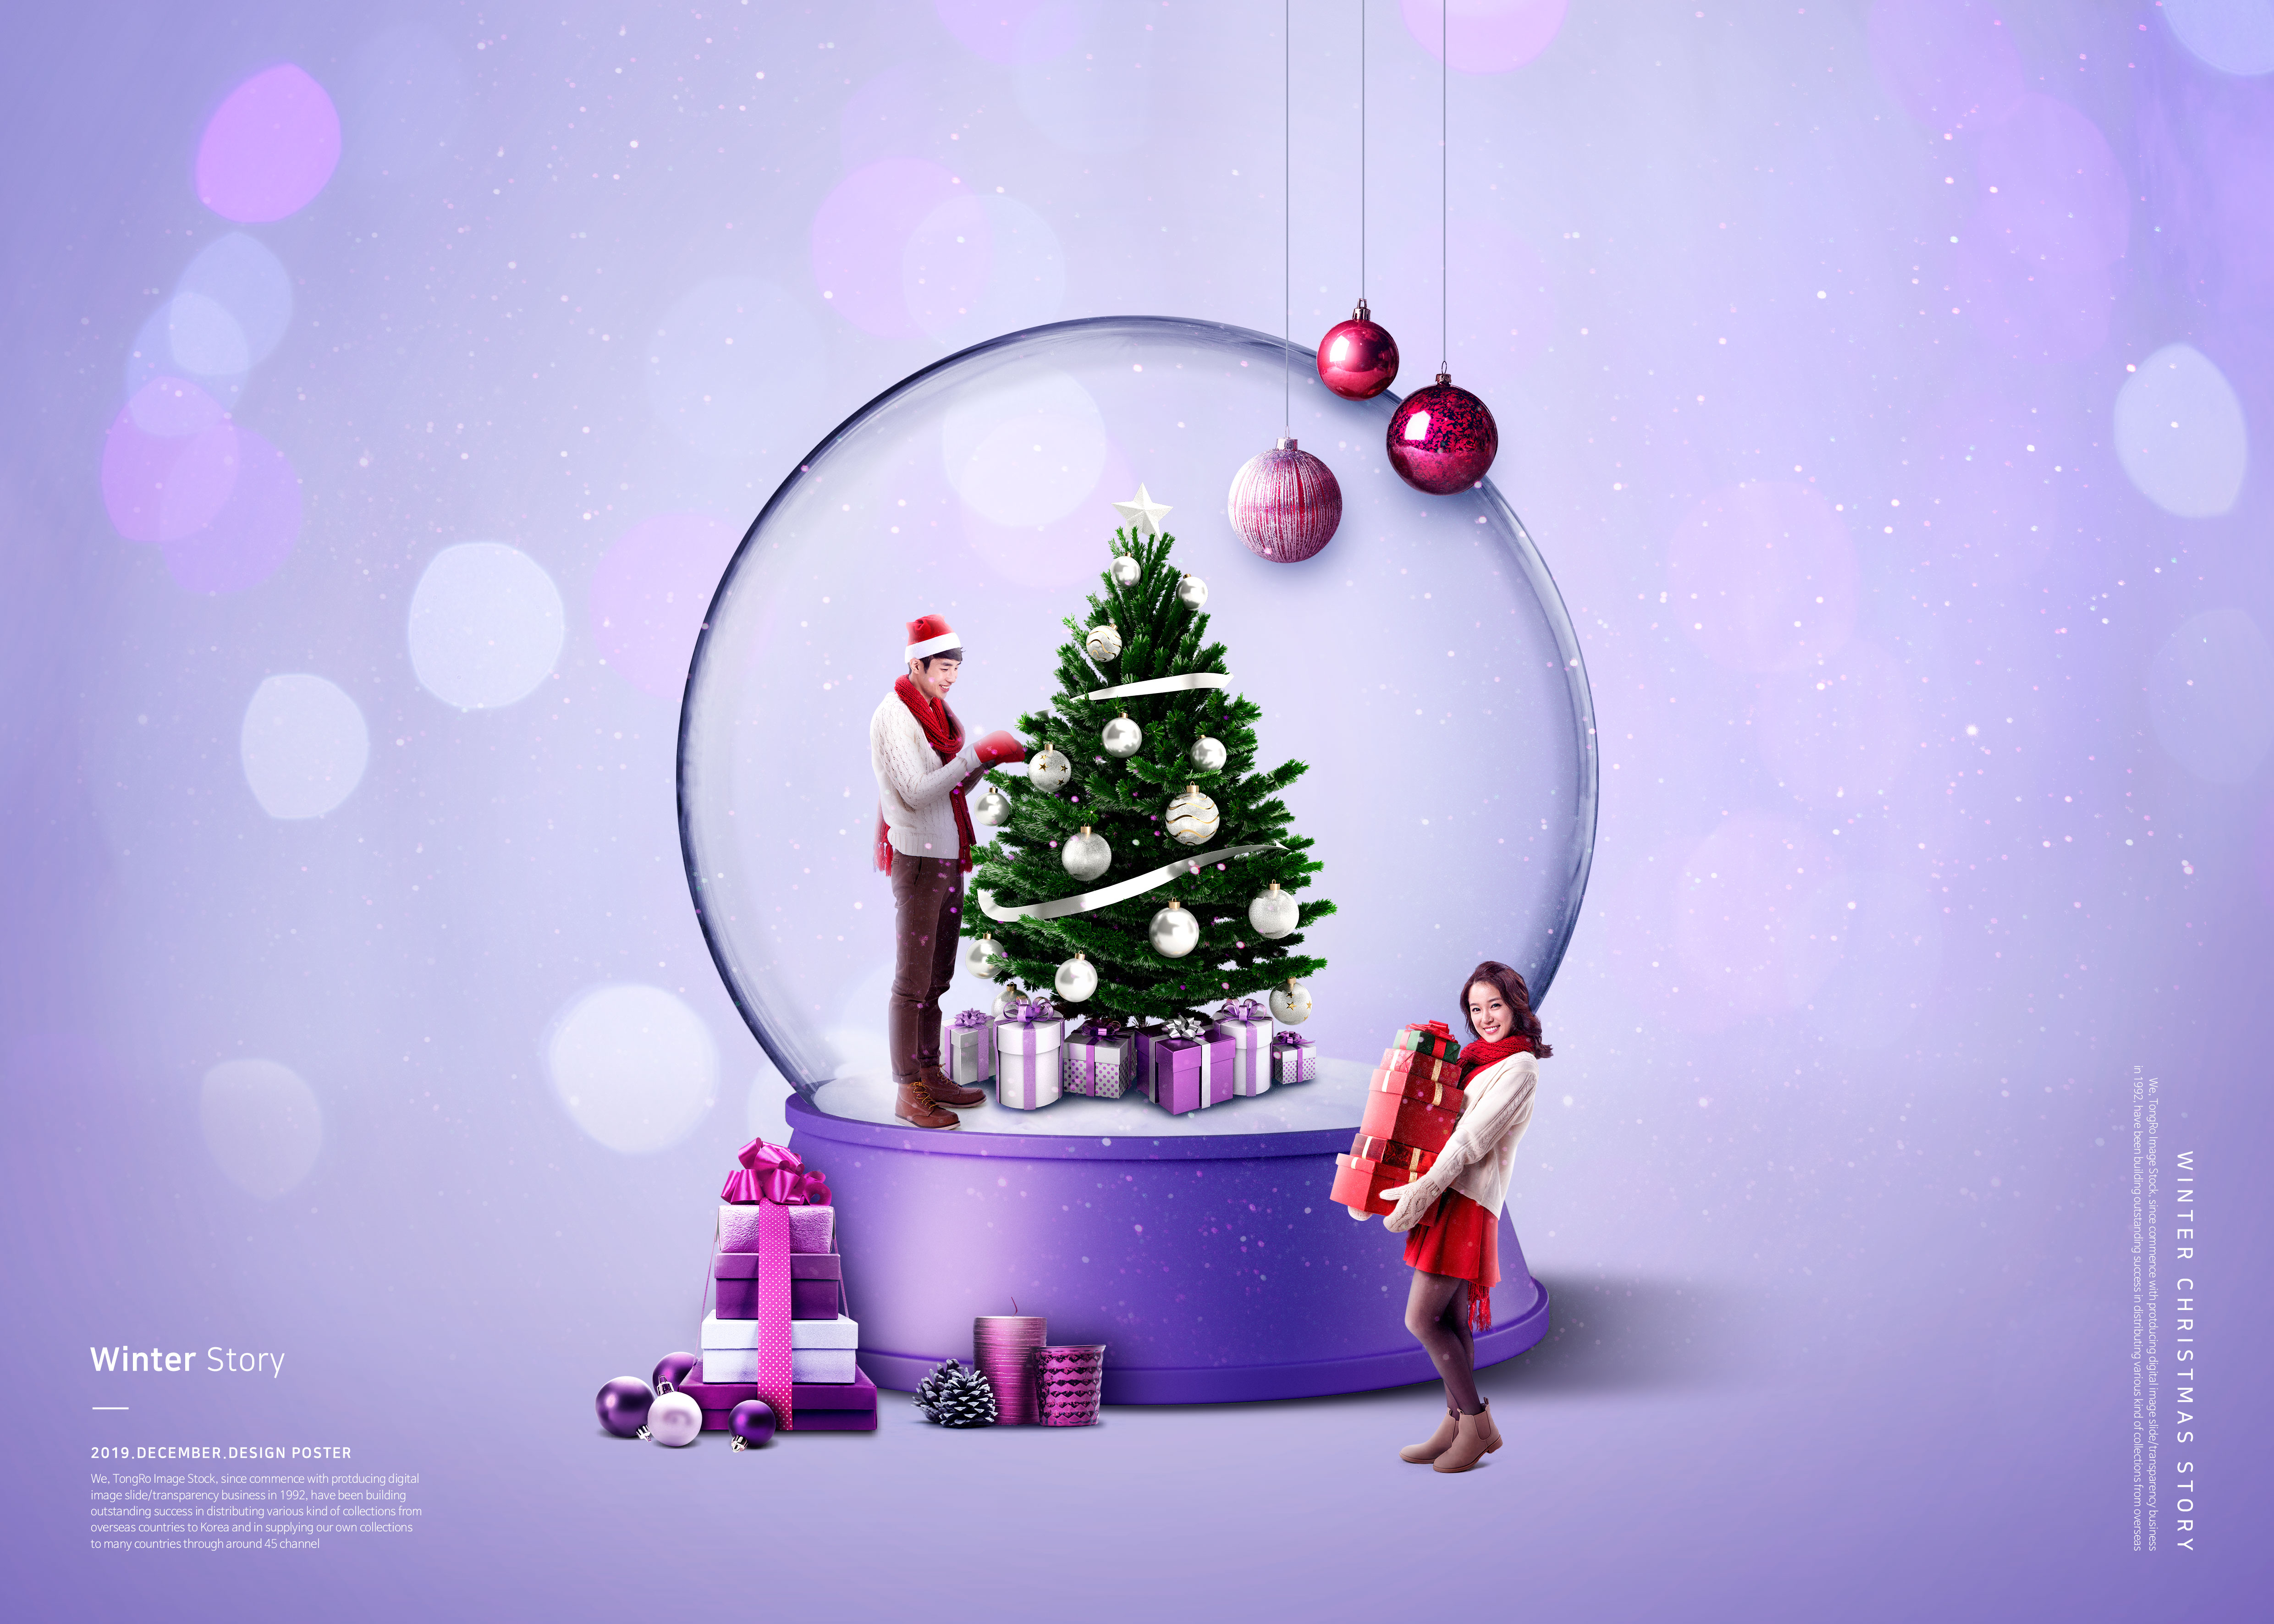 水晶球元素圣诞节海报/贺卡素材[PSD]插图